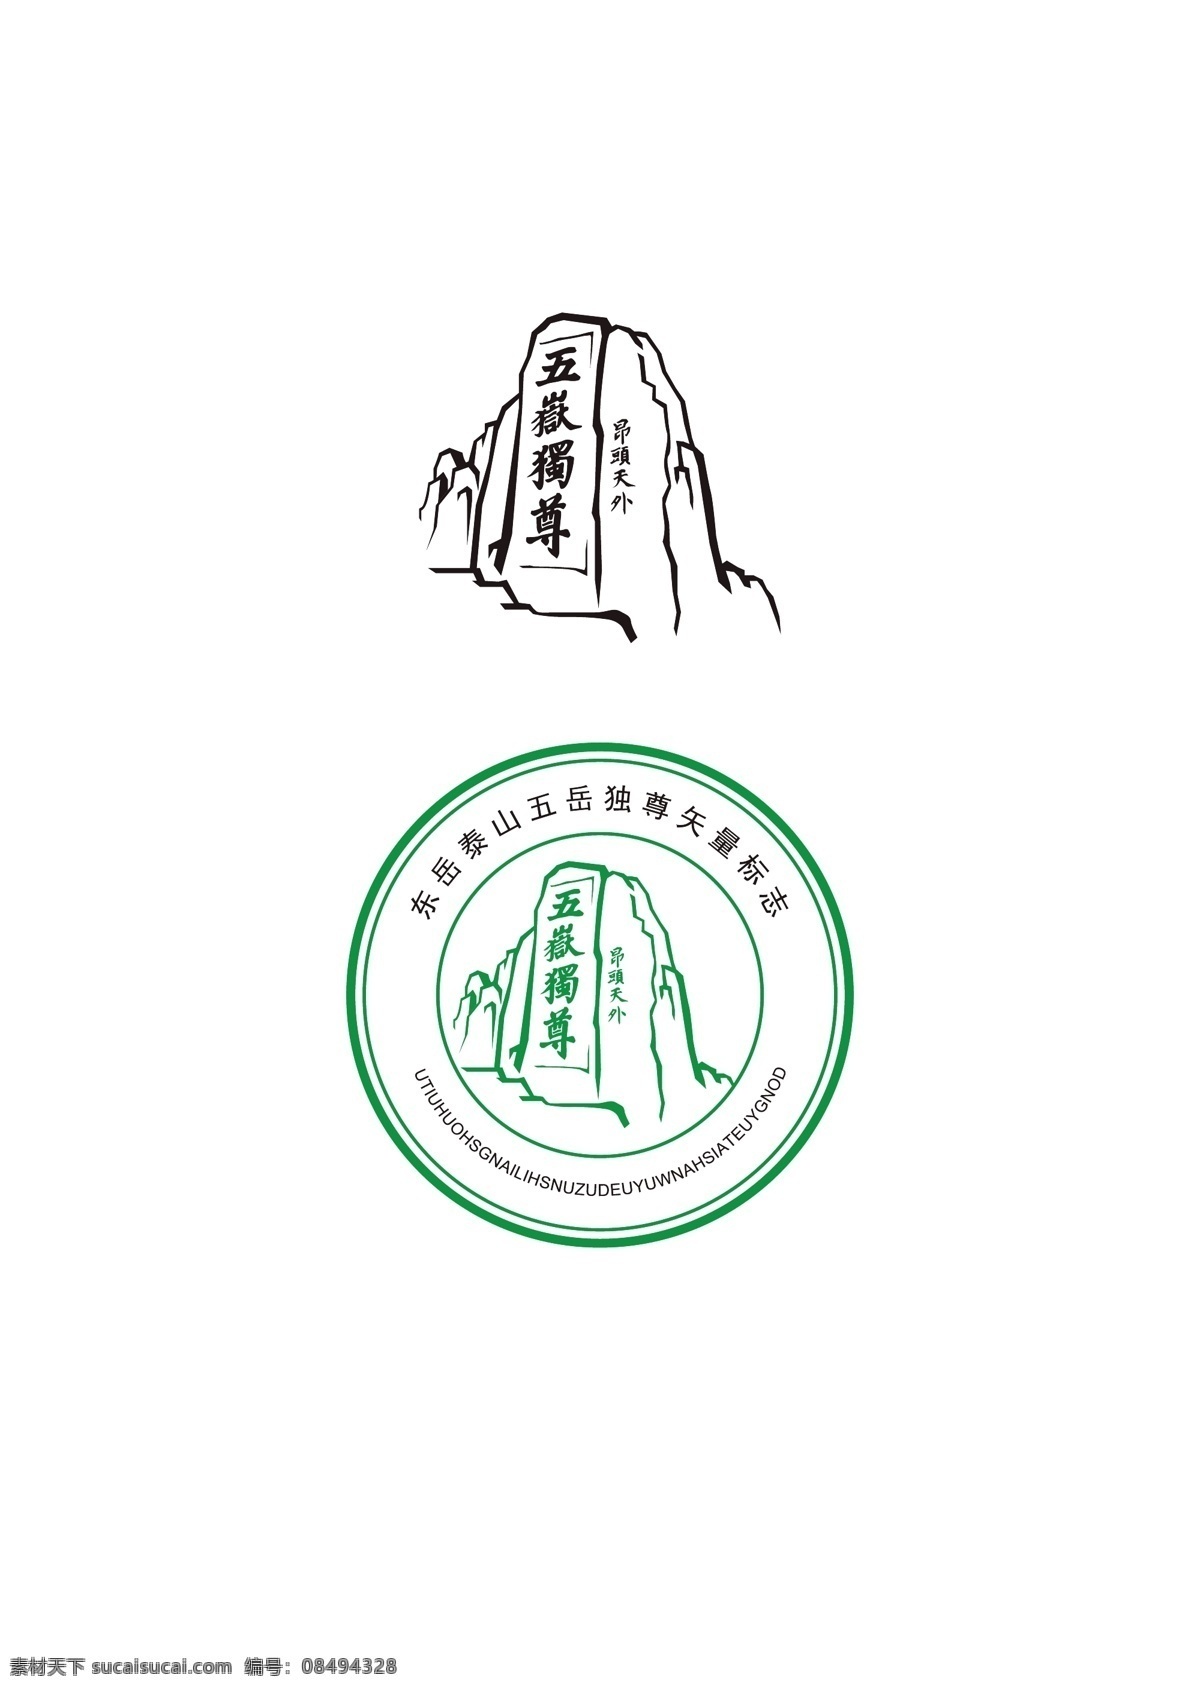 东岳泰山 五岳独尊 矢量手绘图 泰山 东岳 碑刻 泰安 世界文化遗产 矢量 手绘 山 标志图标 公共标识标志